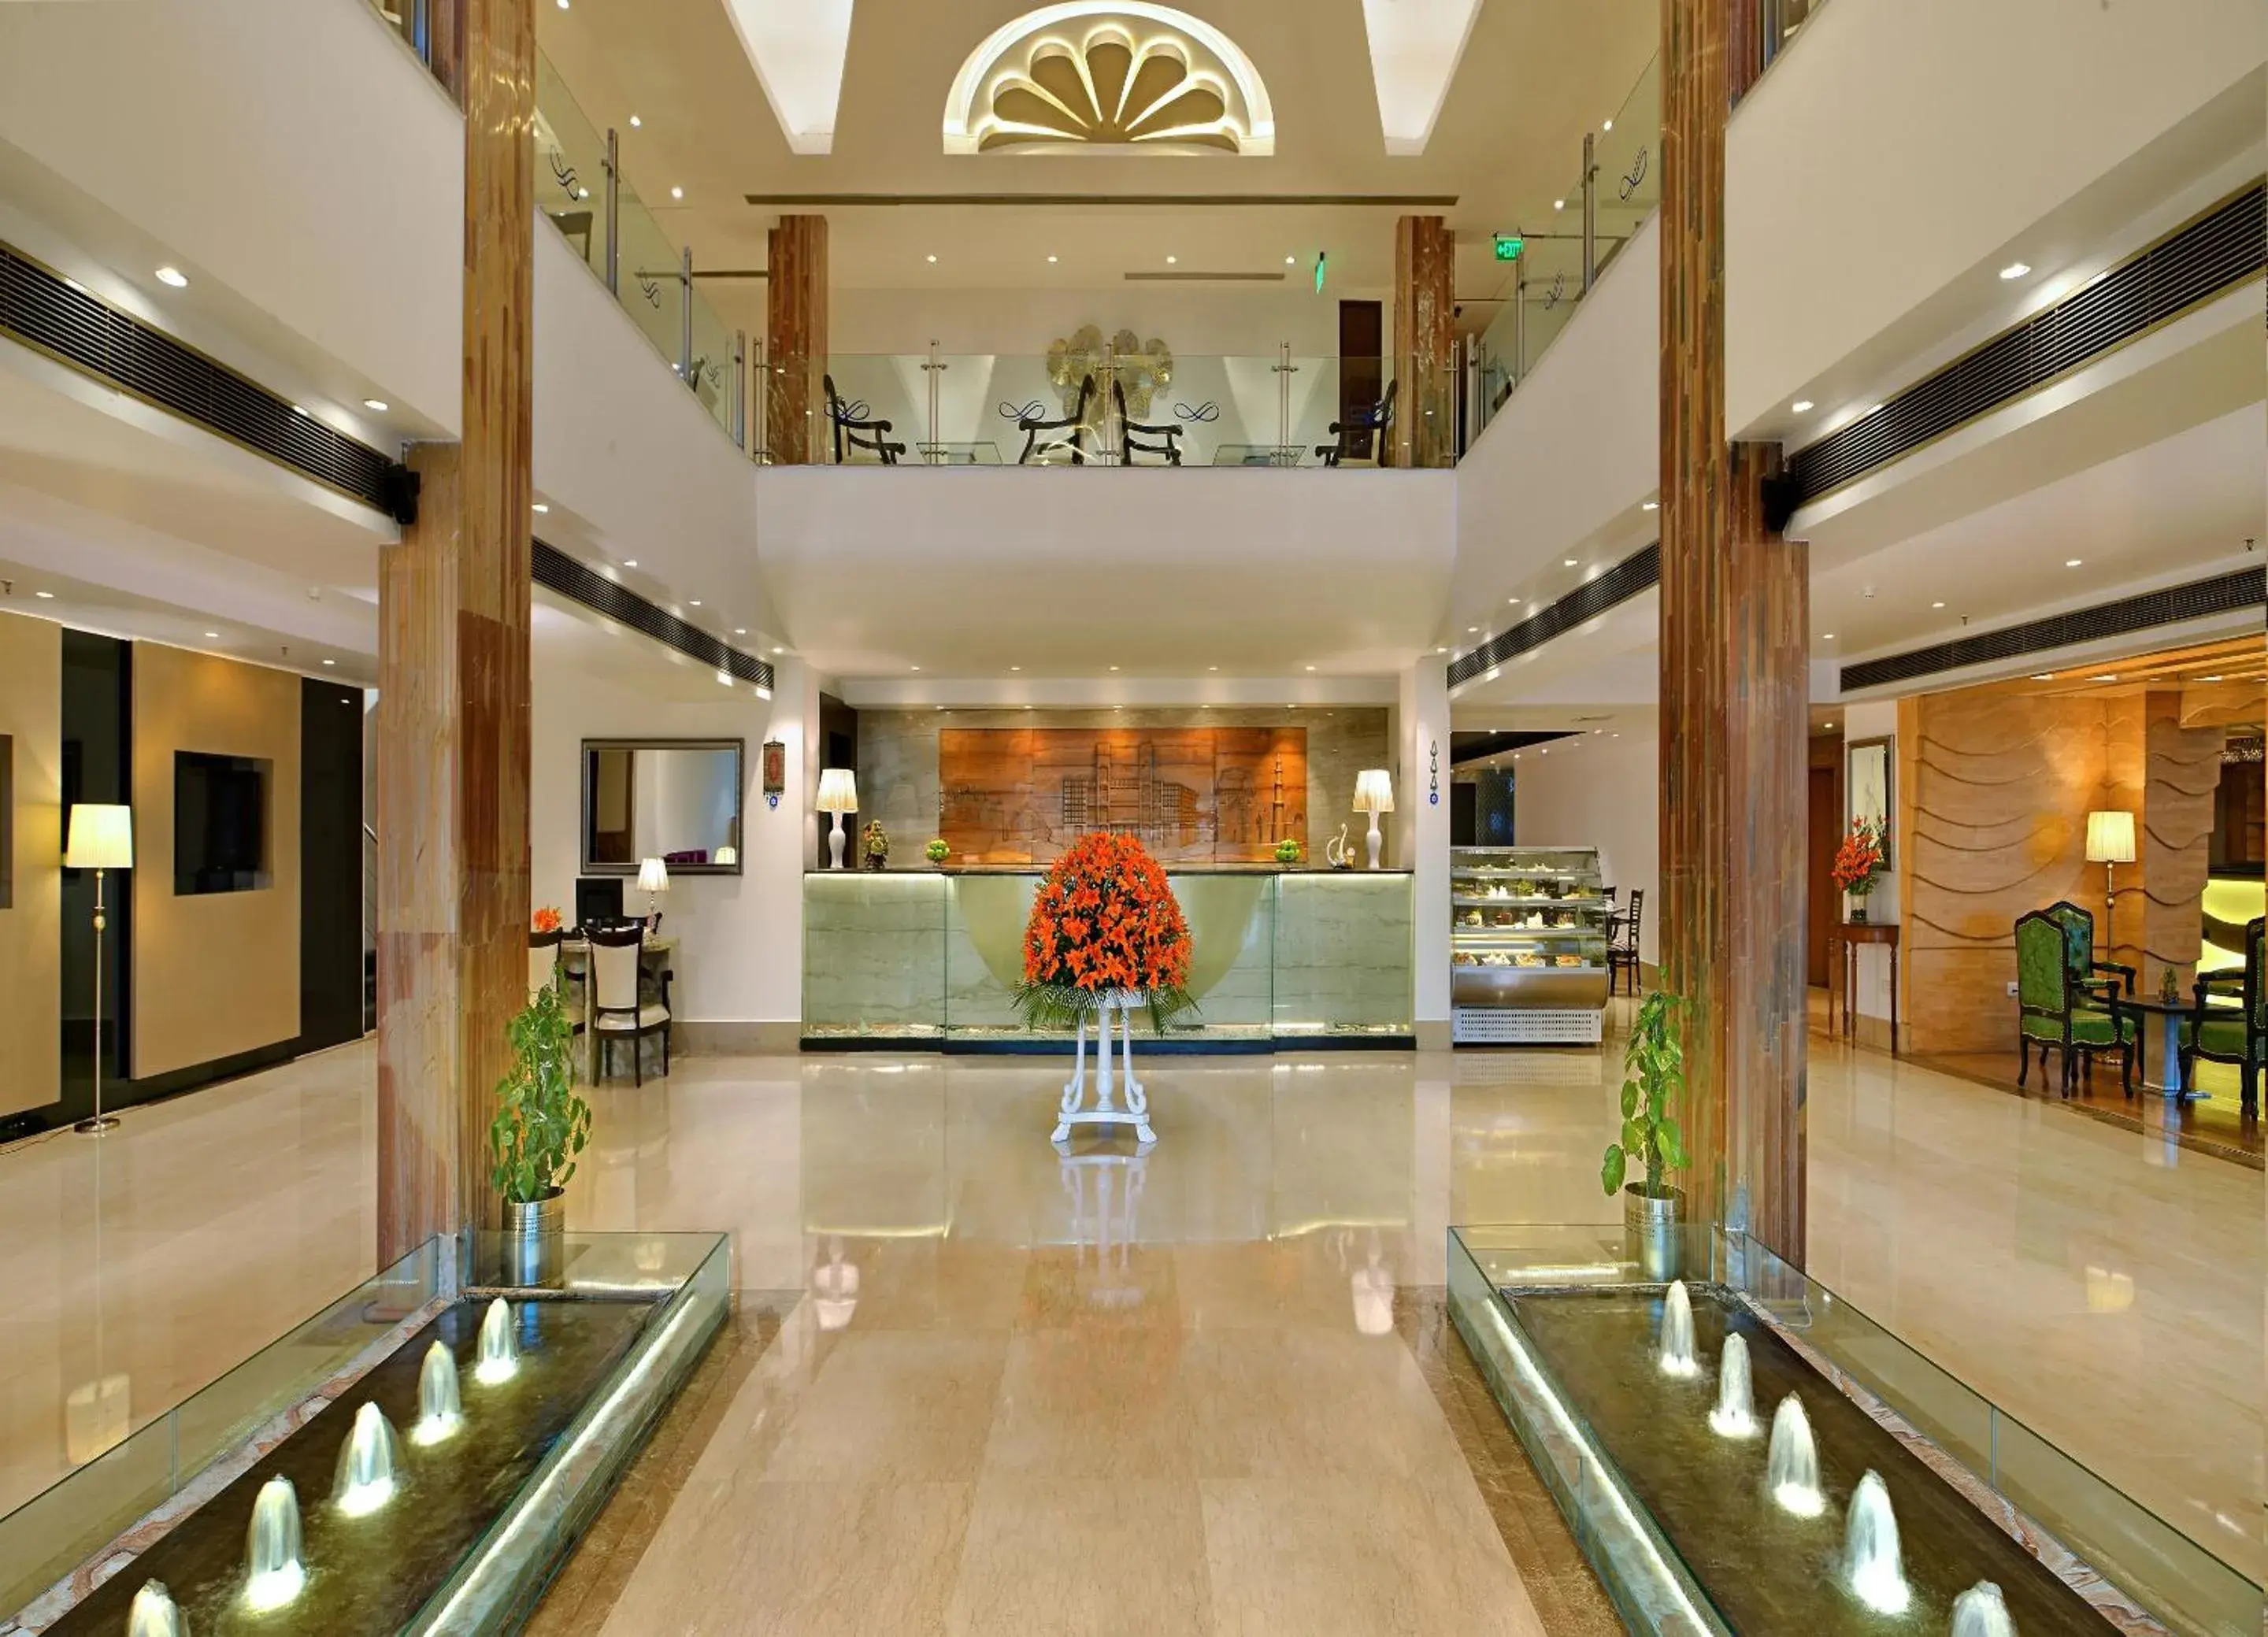 Lobby or reception, Lobby/Reception in Taurus Sarovar Portico